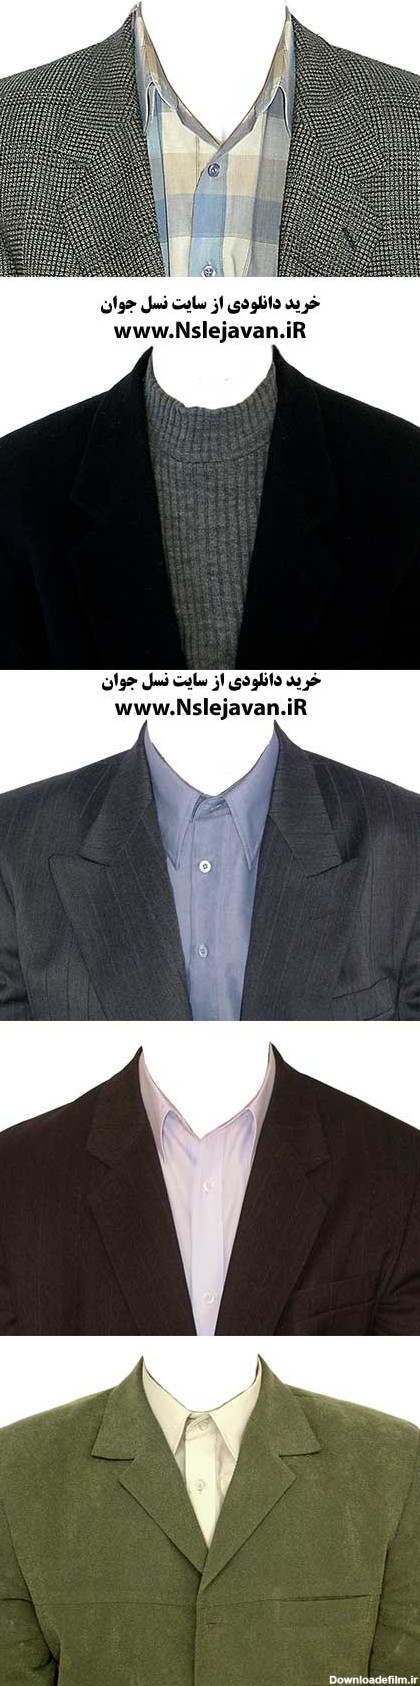 دانلود مونتاژ عکس کت با پیراهن و تی شرت بلوز – ش ۵۰ – سایت نسل جوان